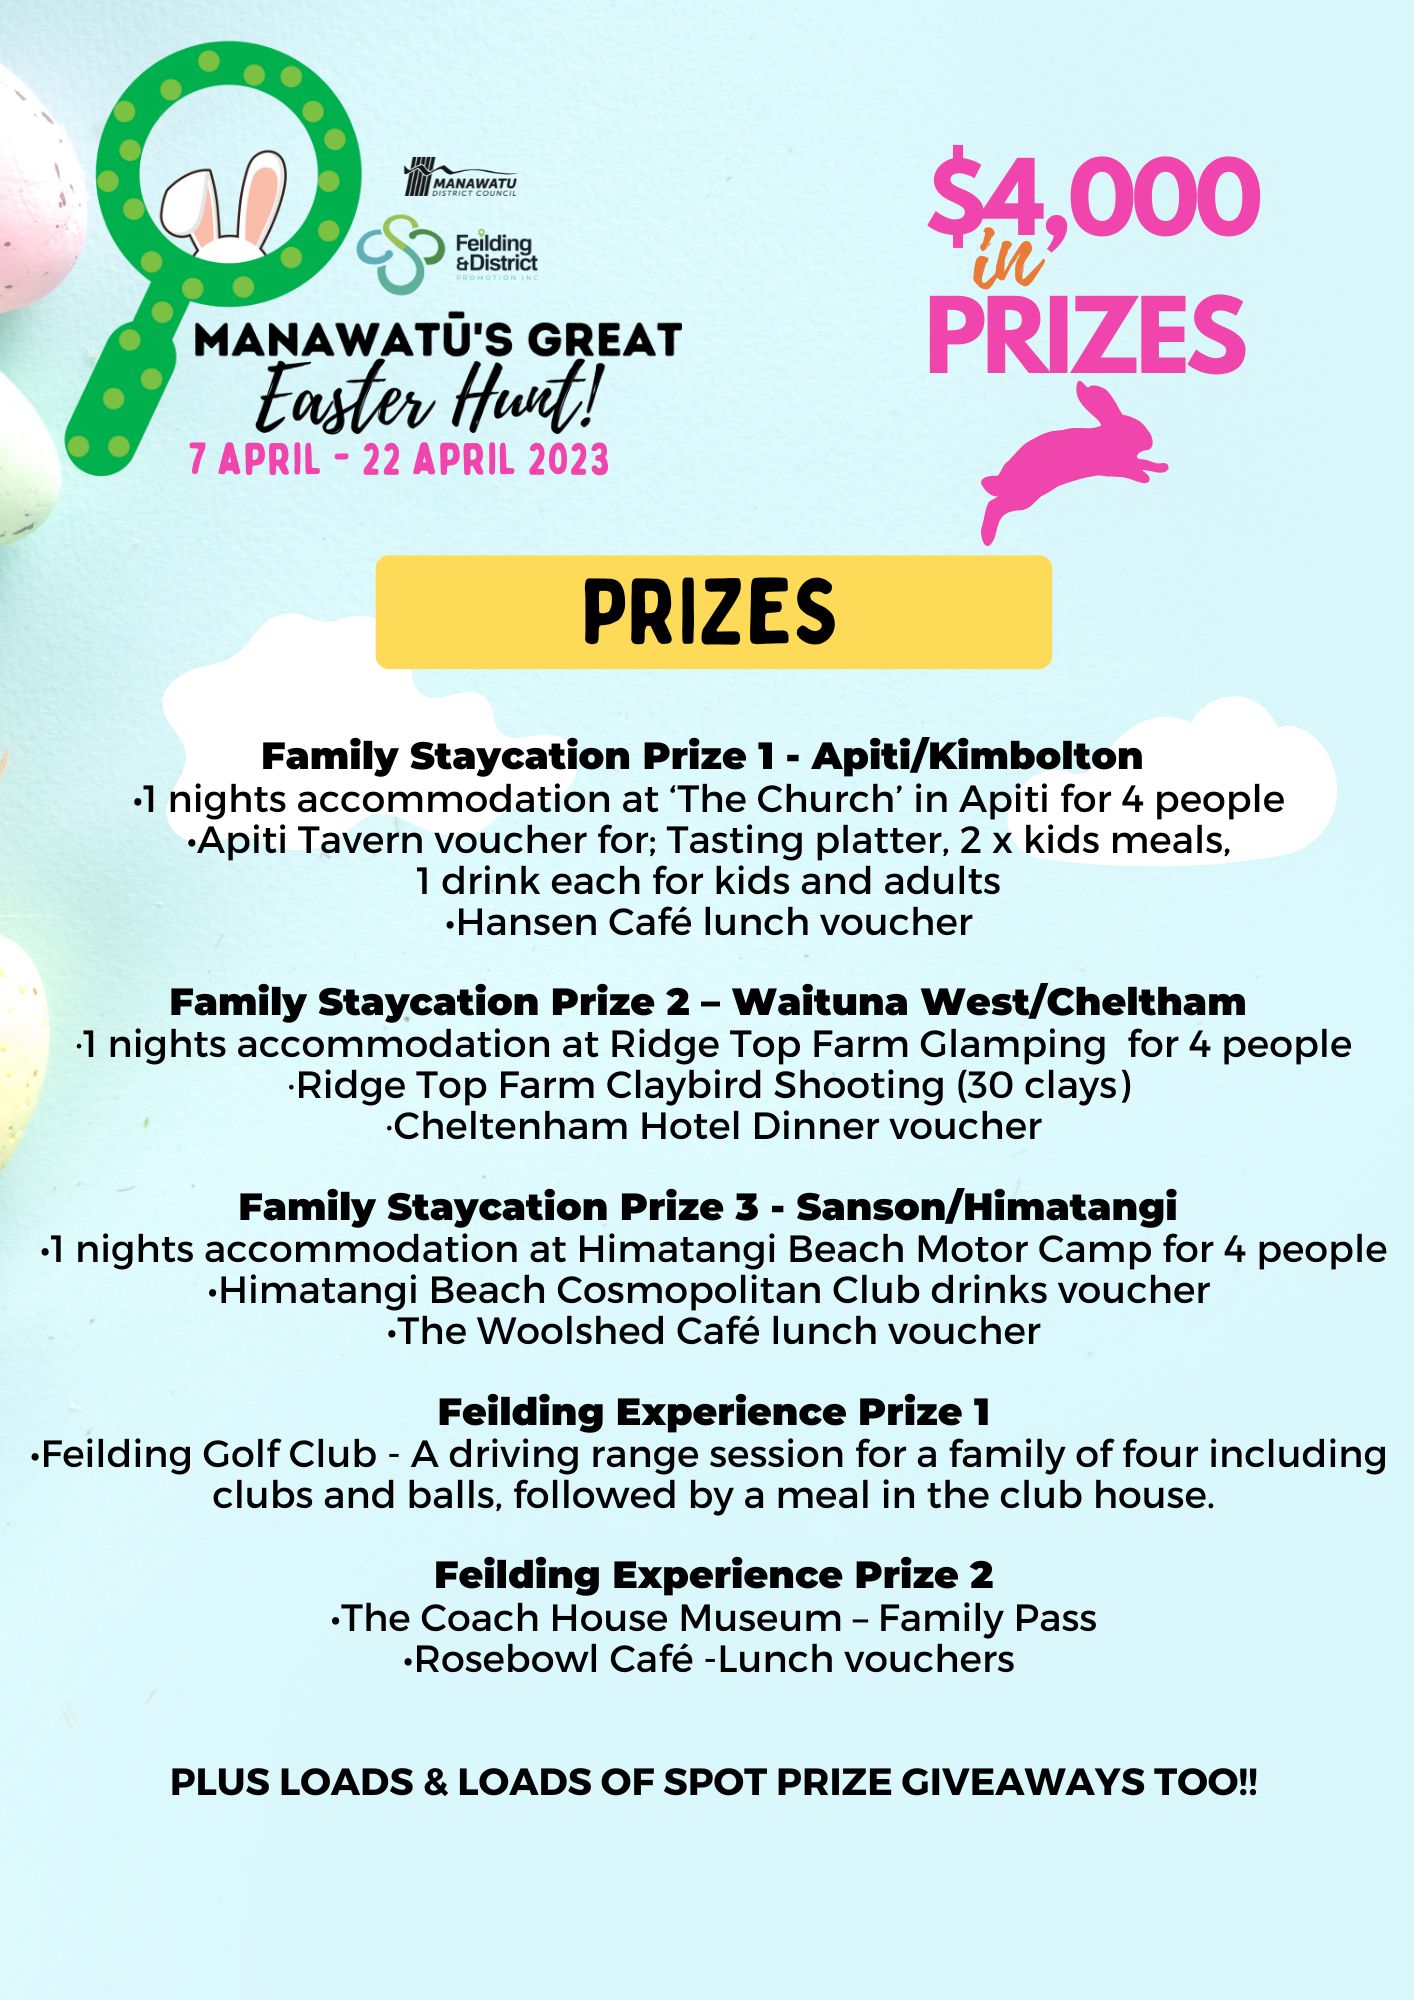 Manawatus Great Easter Hunt 2023 Prizes